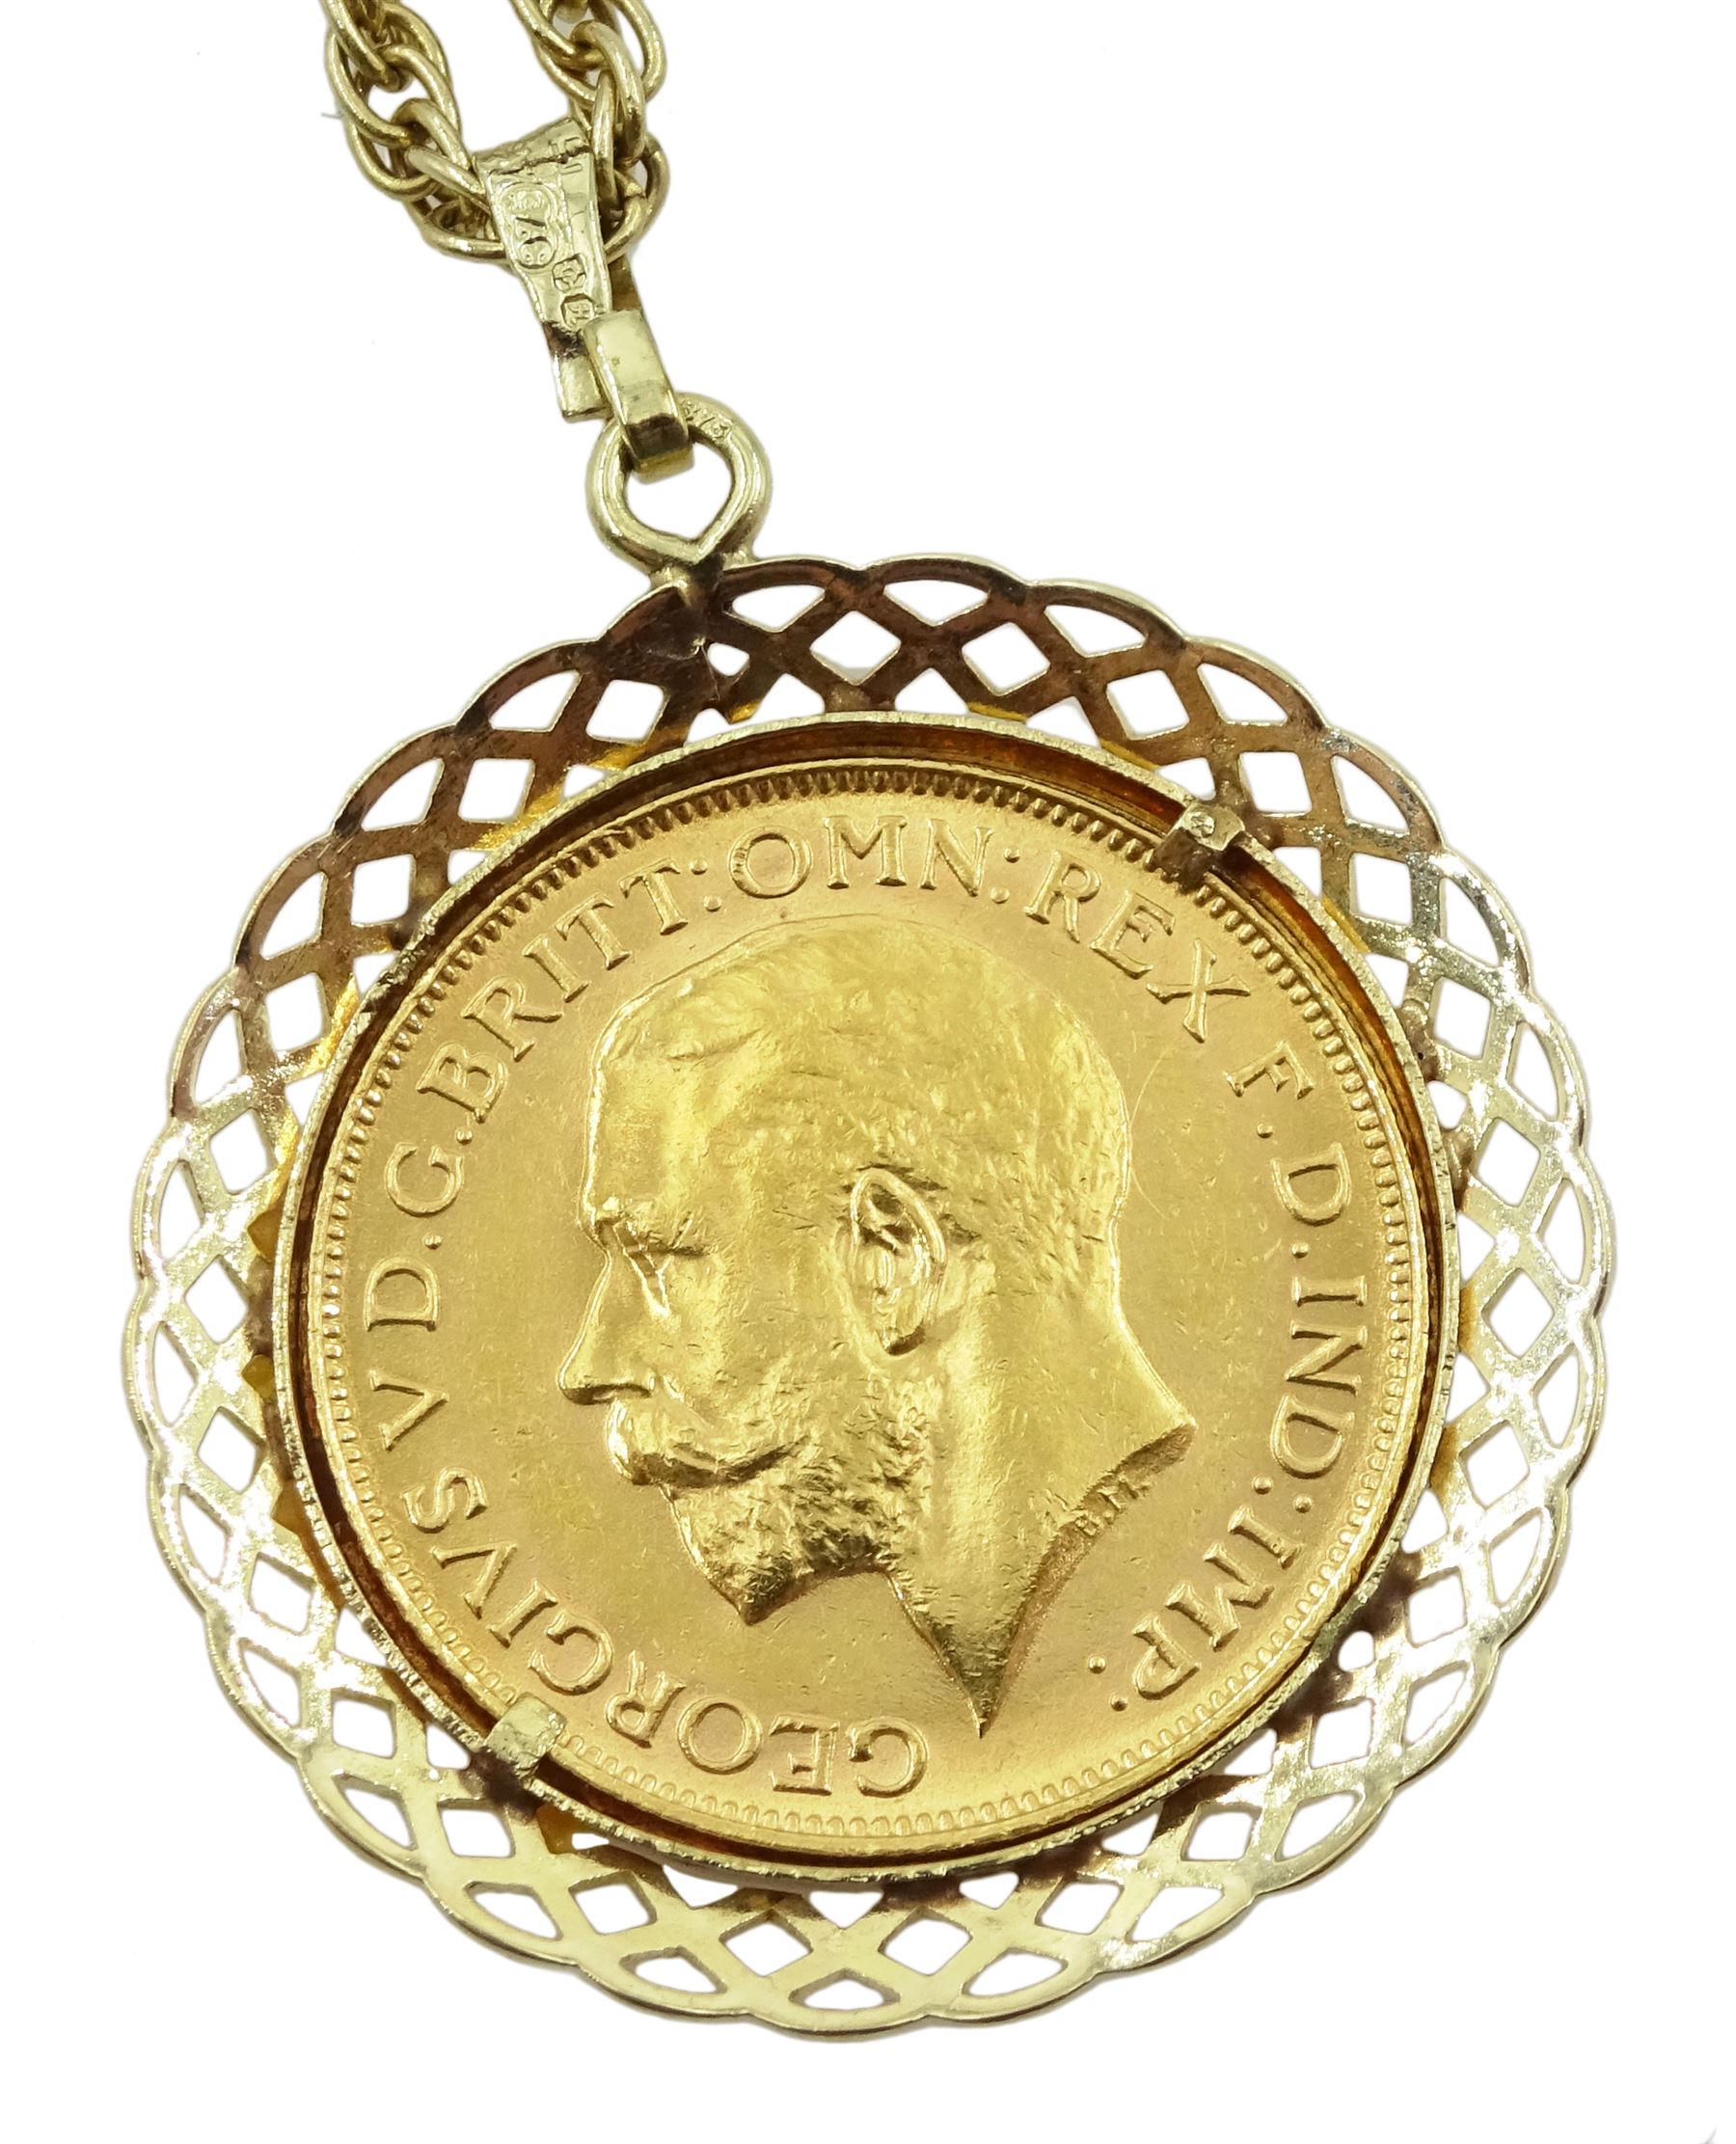 George V 1918 gold full sovereign - Image 3 of 3